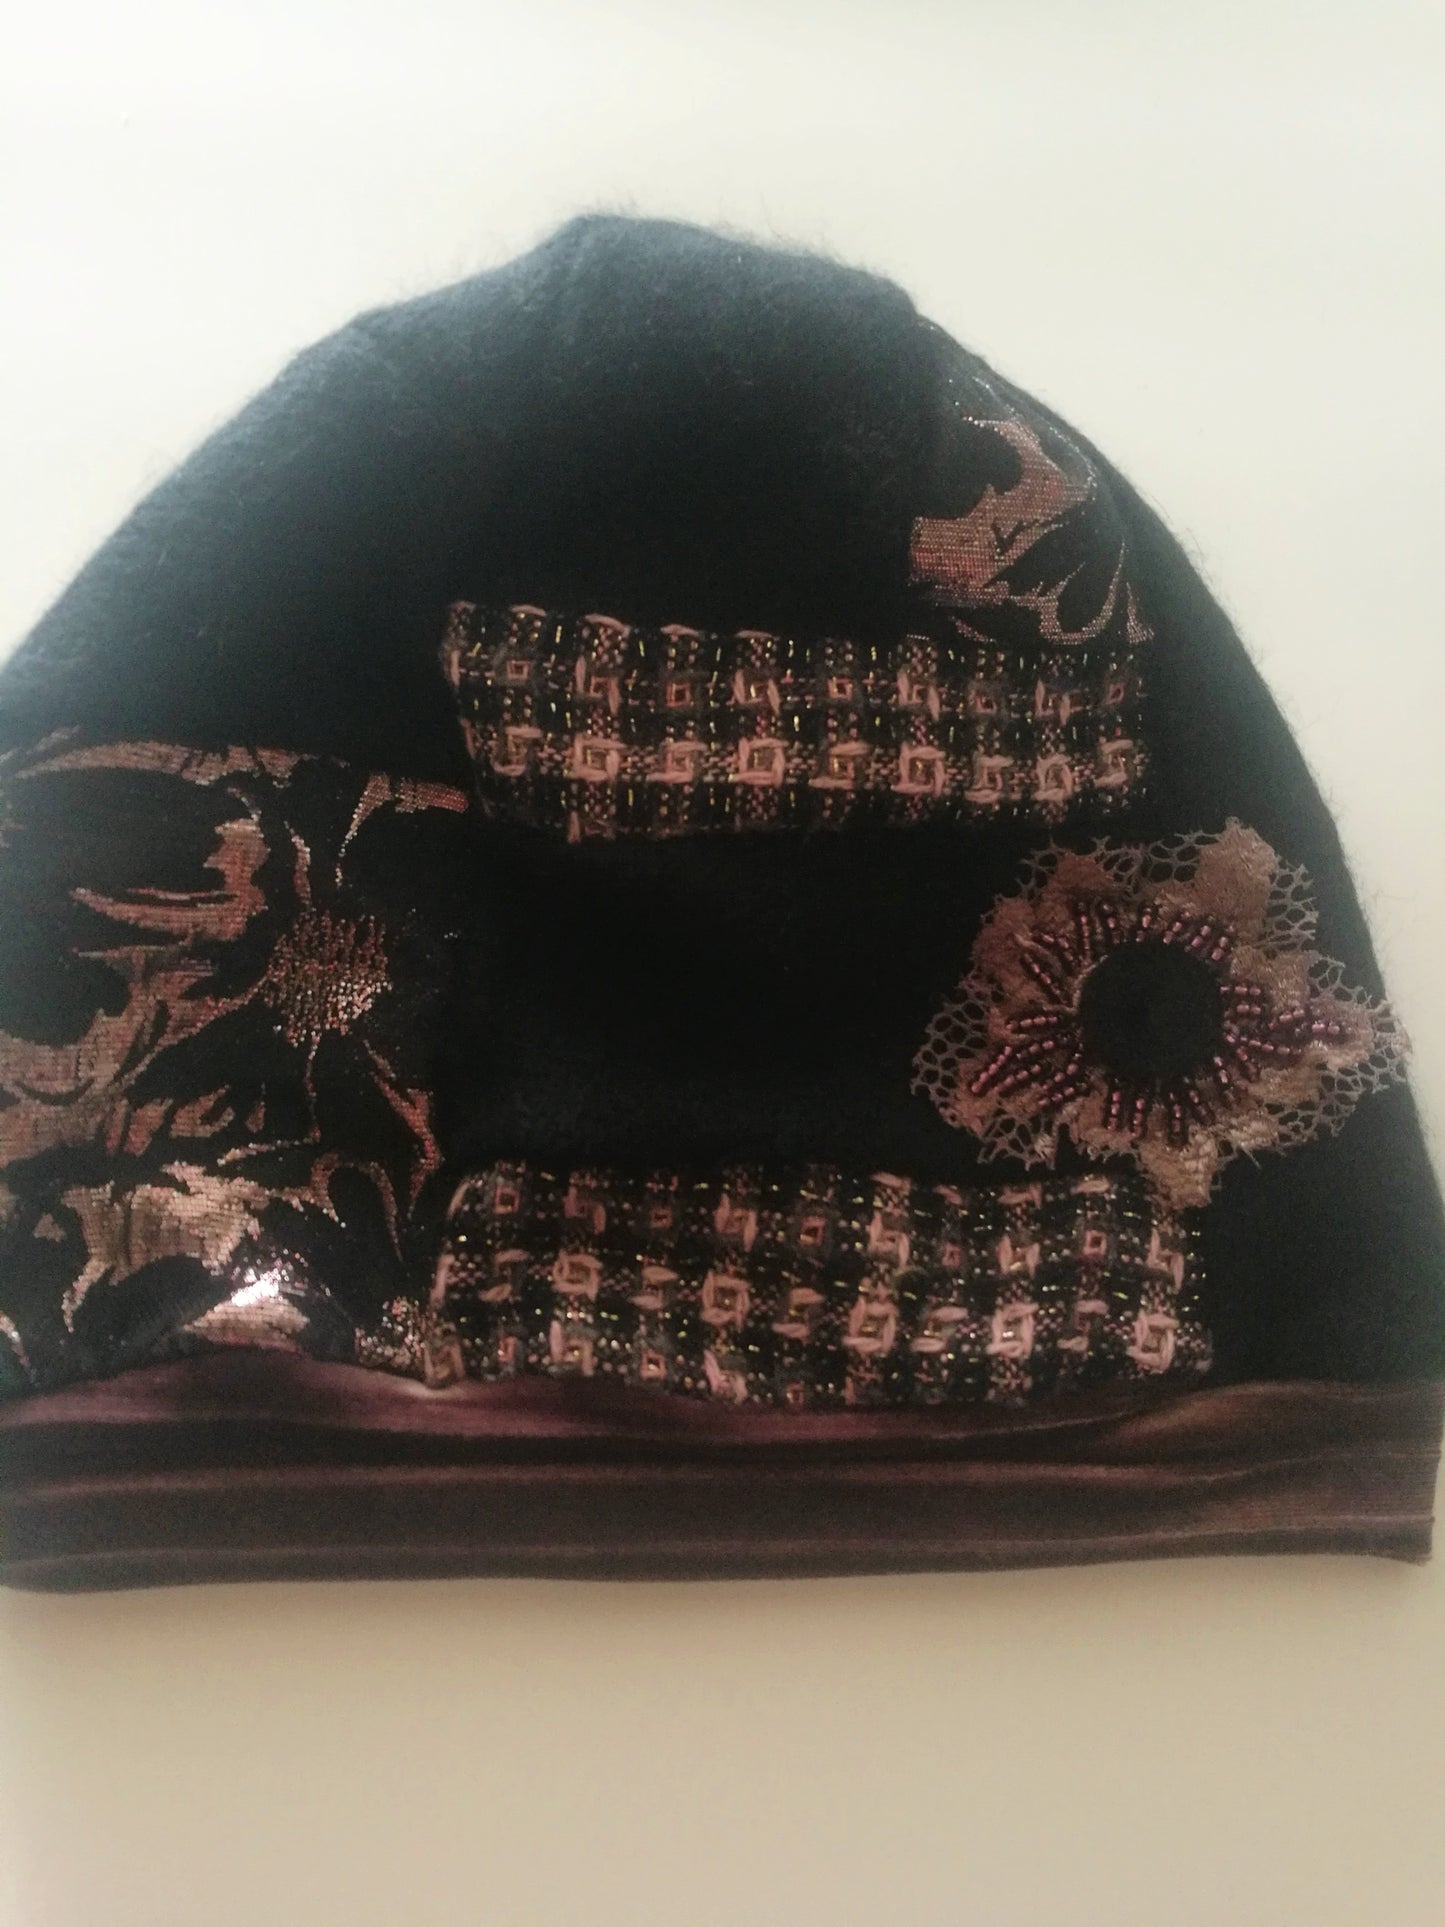 Winter Beanies for Women Black Wool Beanie Warm Knit Hat for Women